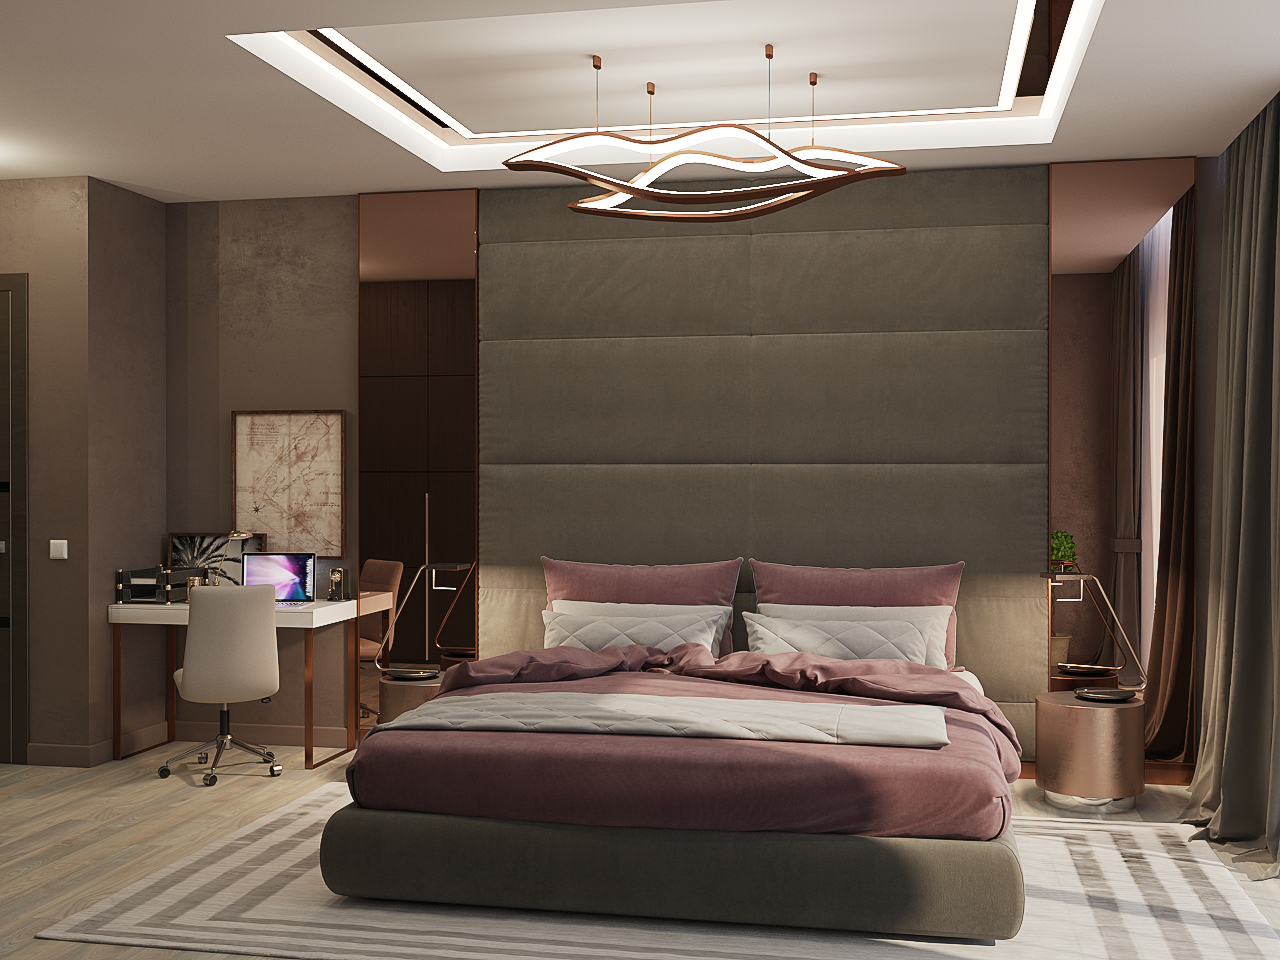 Otel tarzı yatak odası in 3d max vray 3.0 resim